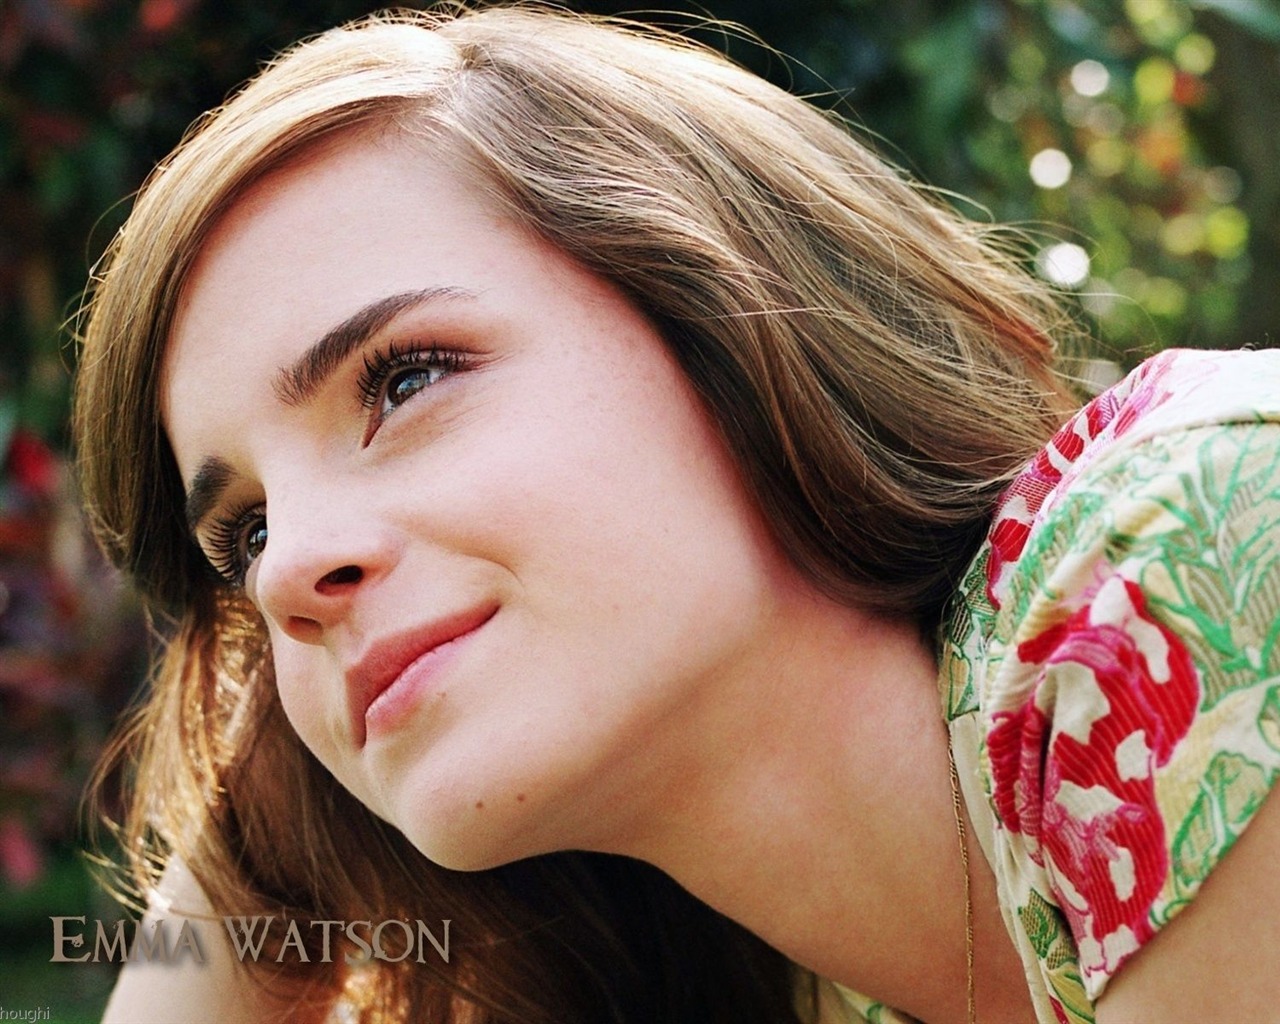 Emma Watson 艾玛·沃特森 美女壁纸26 - 1280x1024